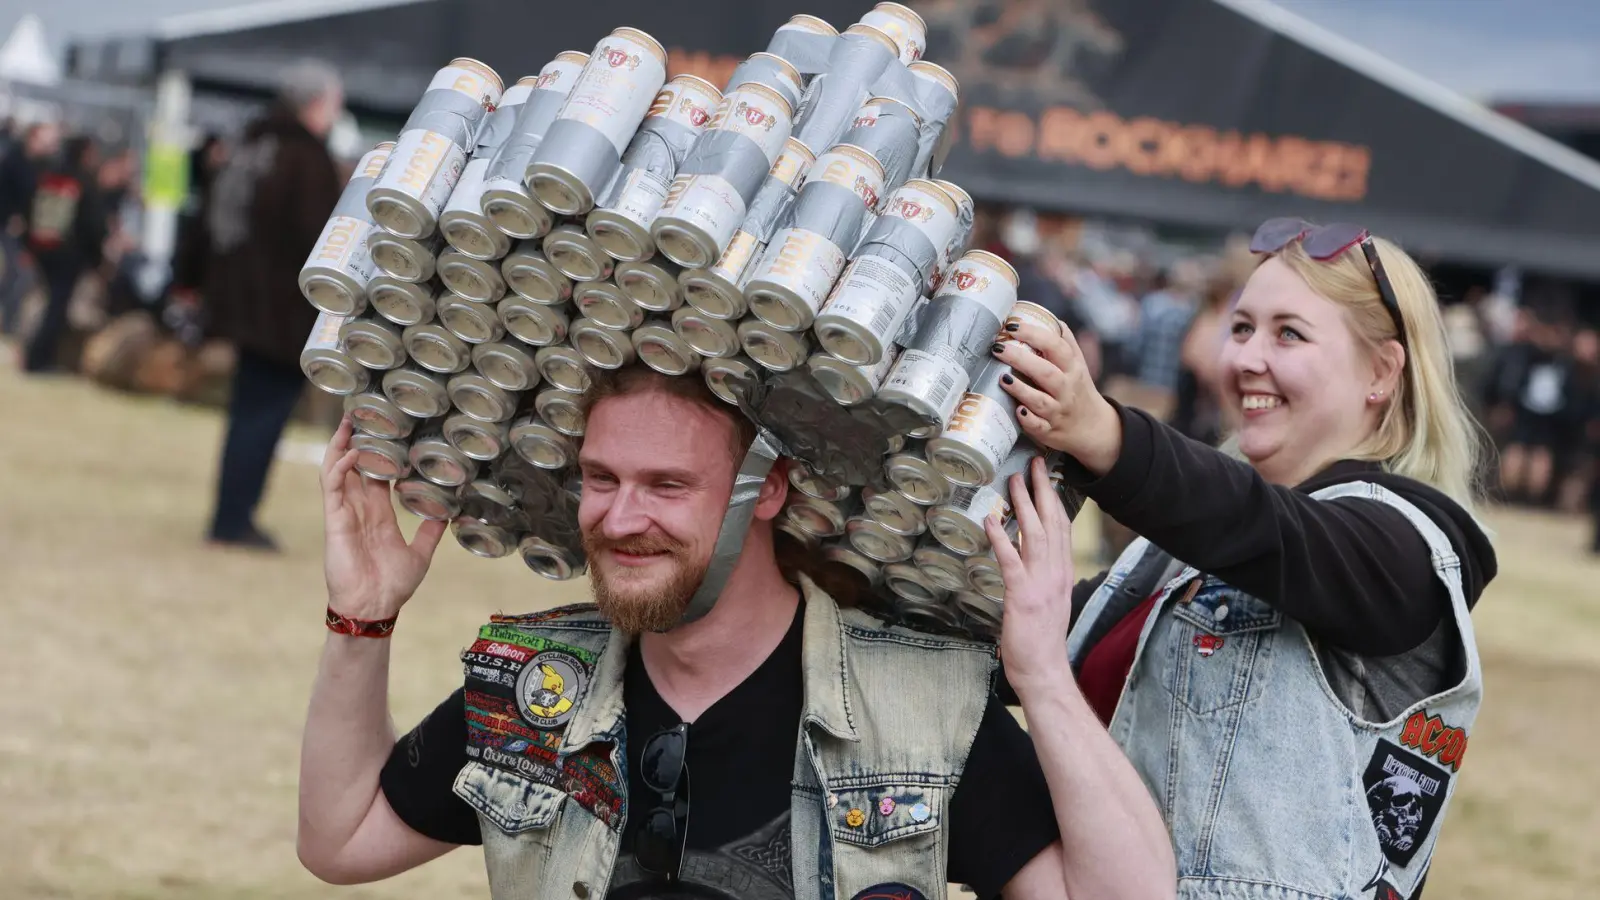 Gut behütet: Ein Besucher des Festivals Rockharz hat sich eine Kopfbedeckung aus Getränkedosen gebastelt und läuft über das Festivalgelände. (Foto: Matthias Bein/dpa)